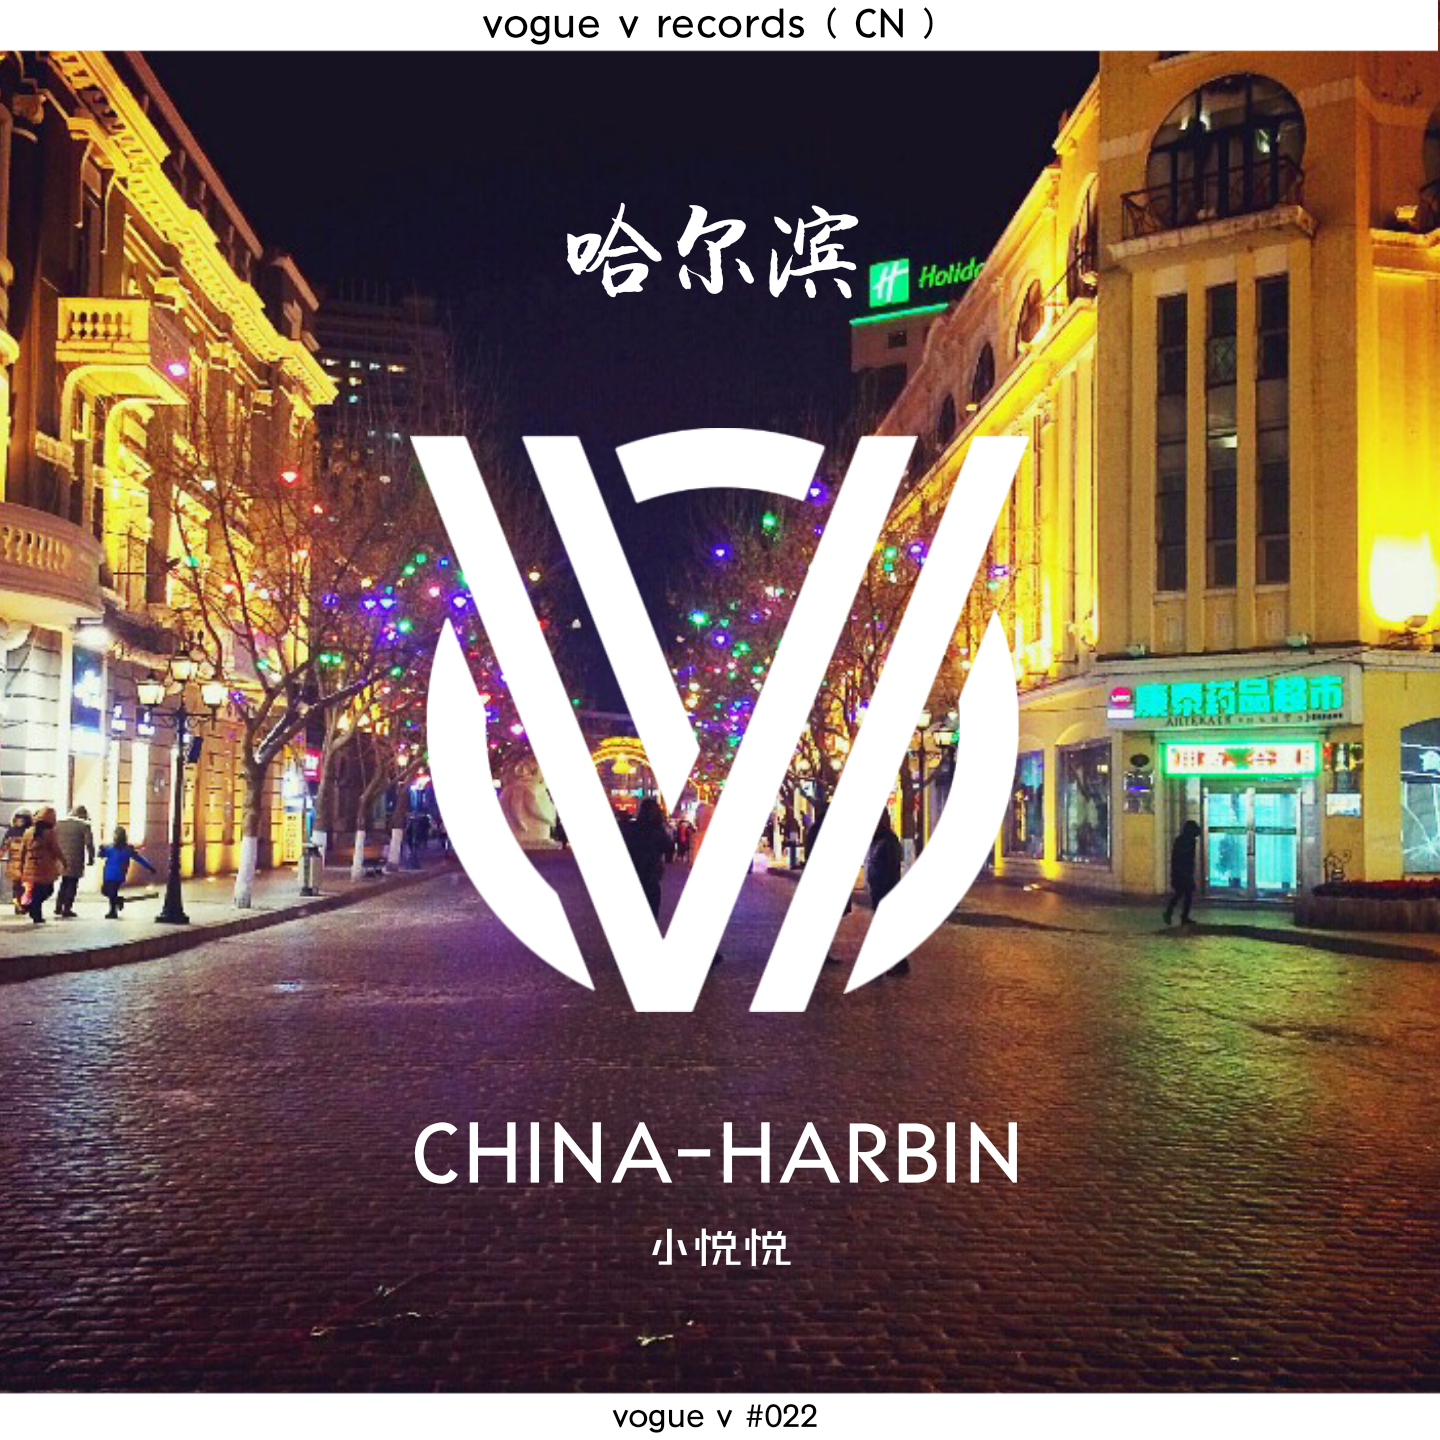 China-Harbin